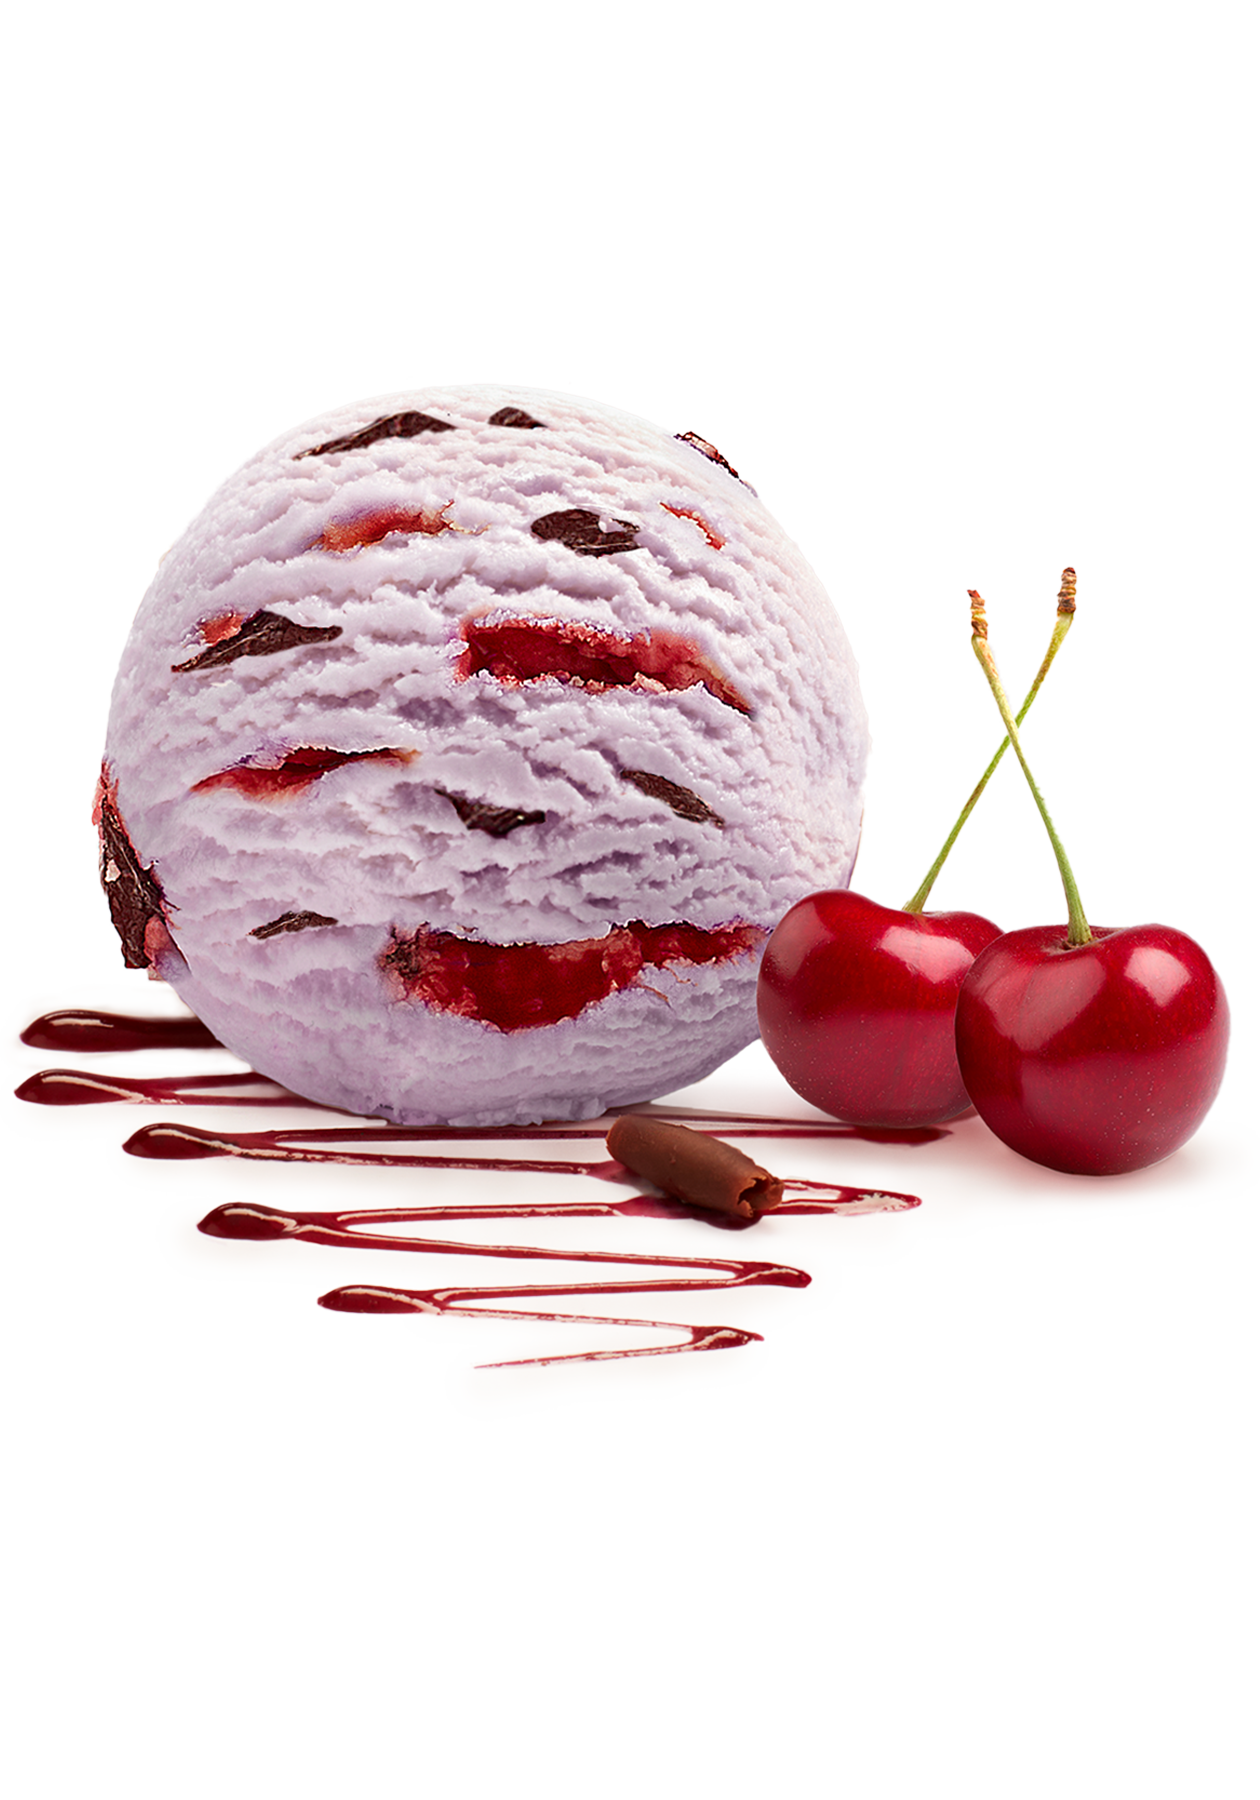 Sour Cherry Ice Cream Scoop